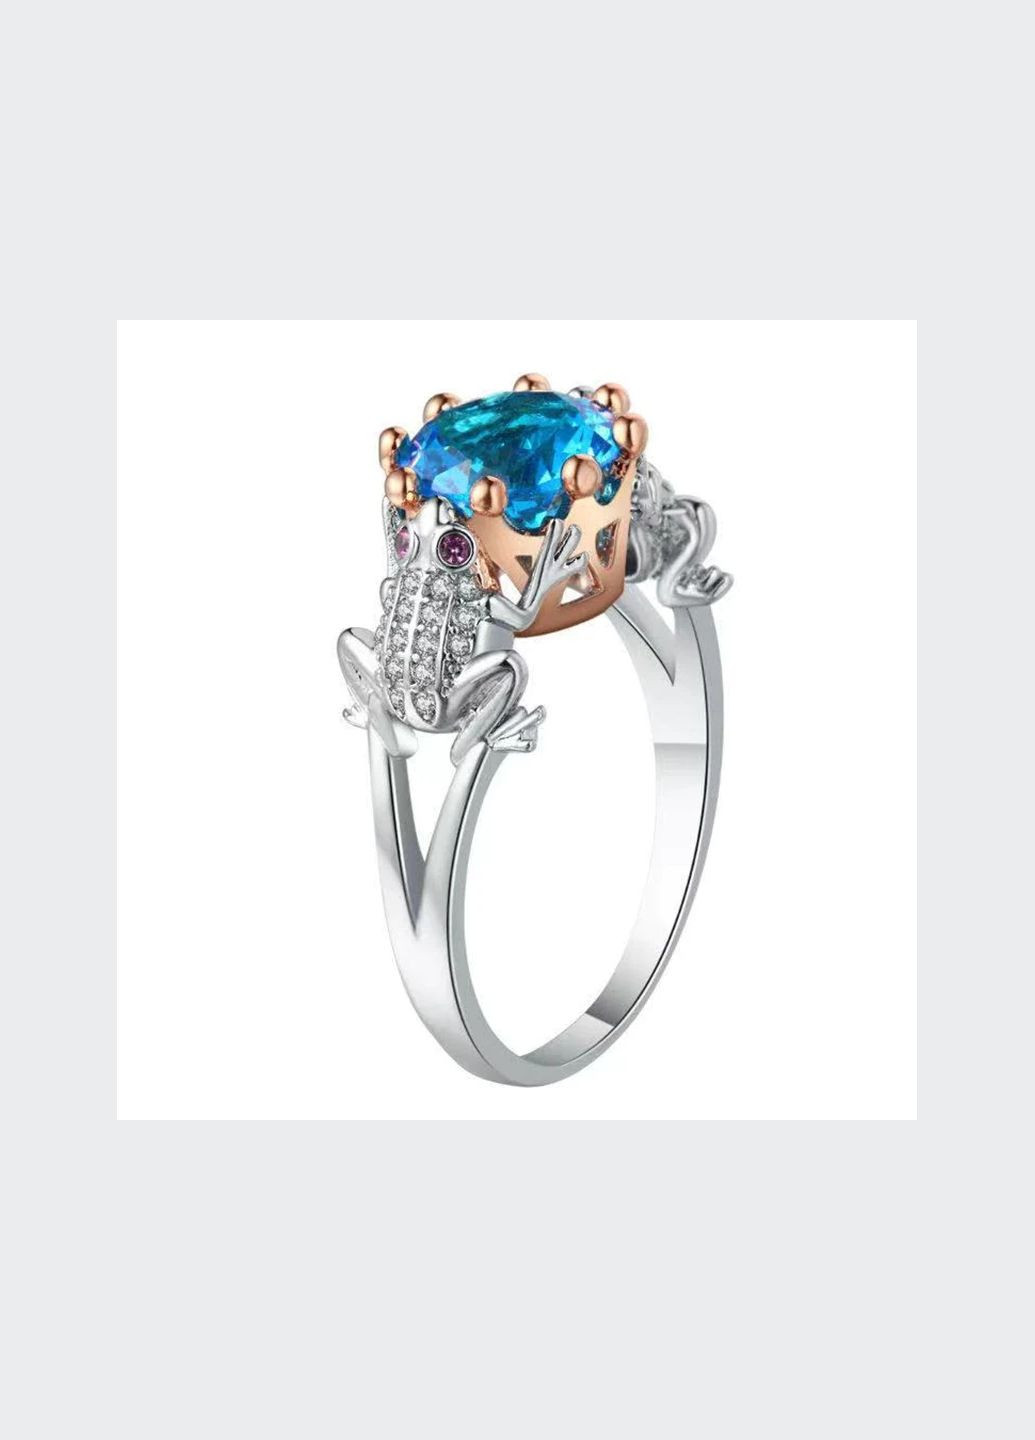 Новое богемное креативное кольцо, две лягушки (жабы) держат корону с голубы фианитом. Царевна лягушка, разм 18 Fashion Jewelry (292861961)